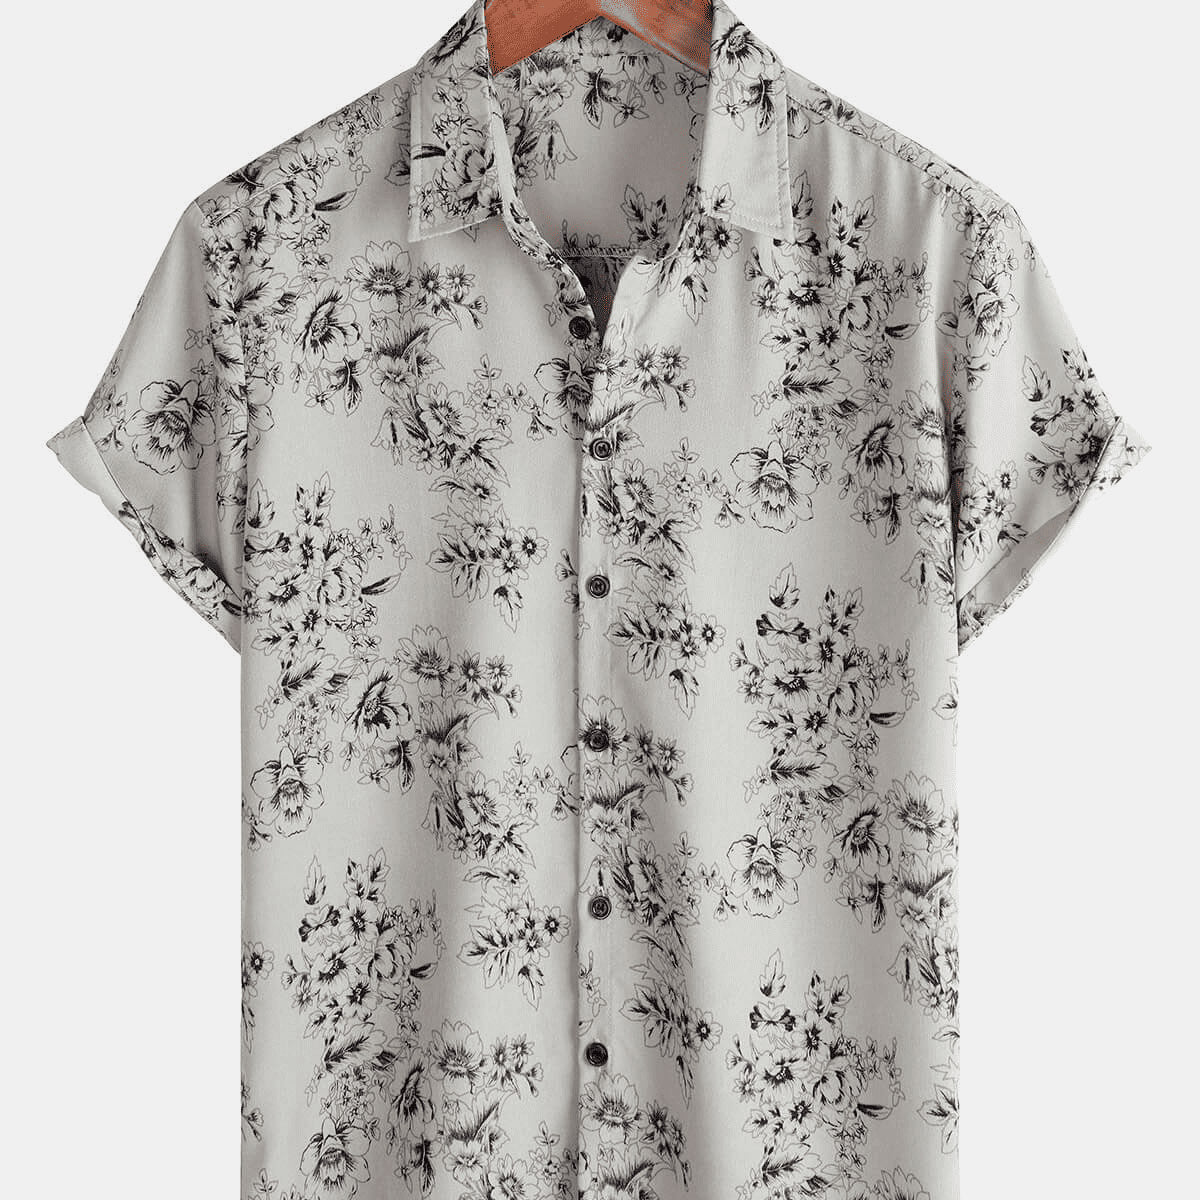 Men's Grey Hawaiian Summer Floral Short Sleeve Cotton Button Up Shirt